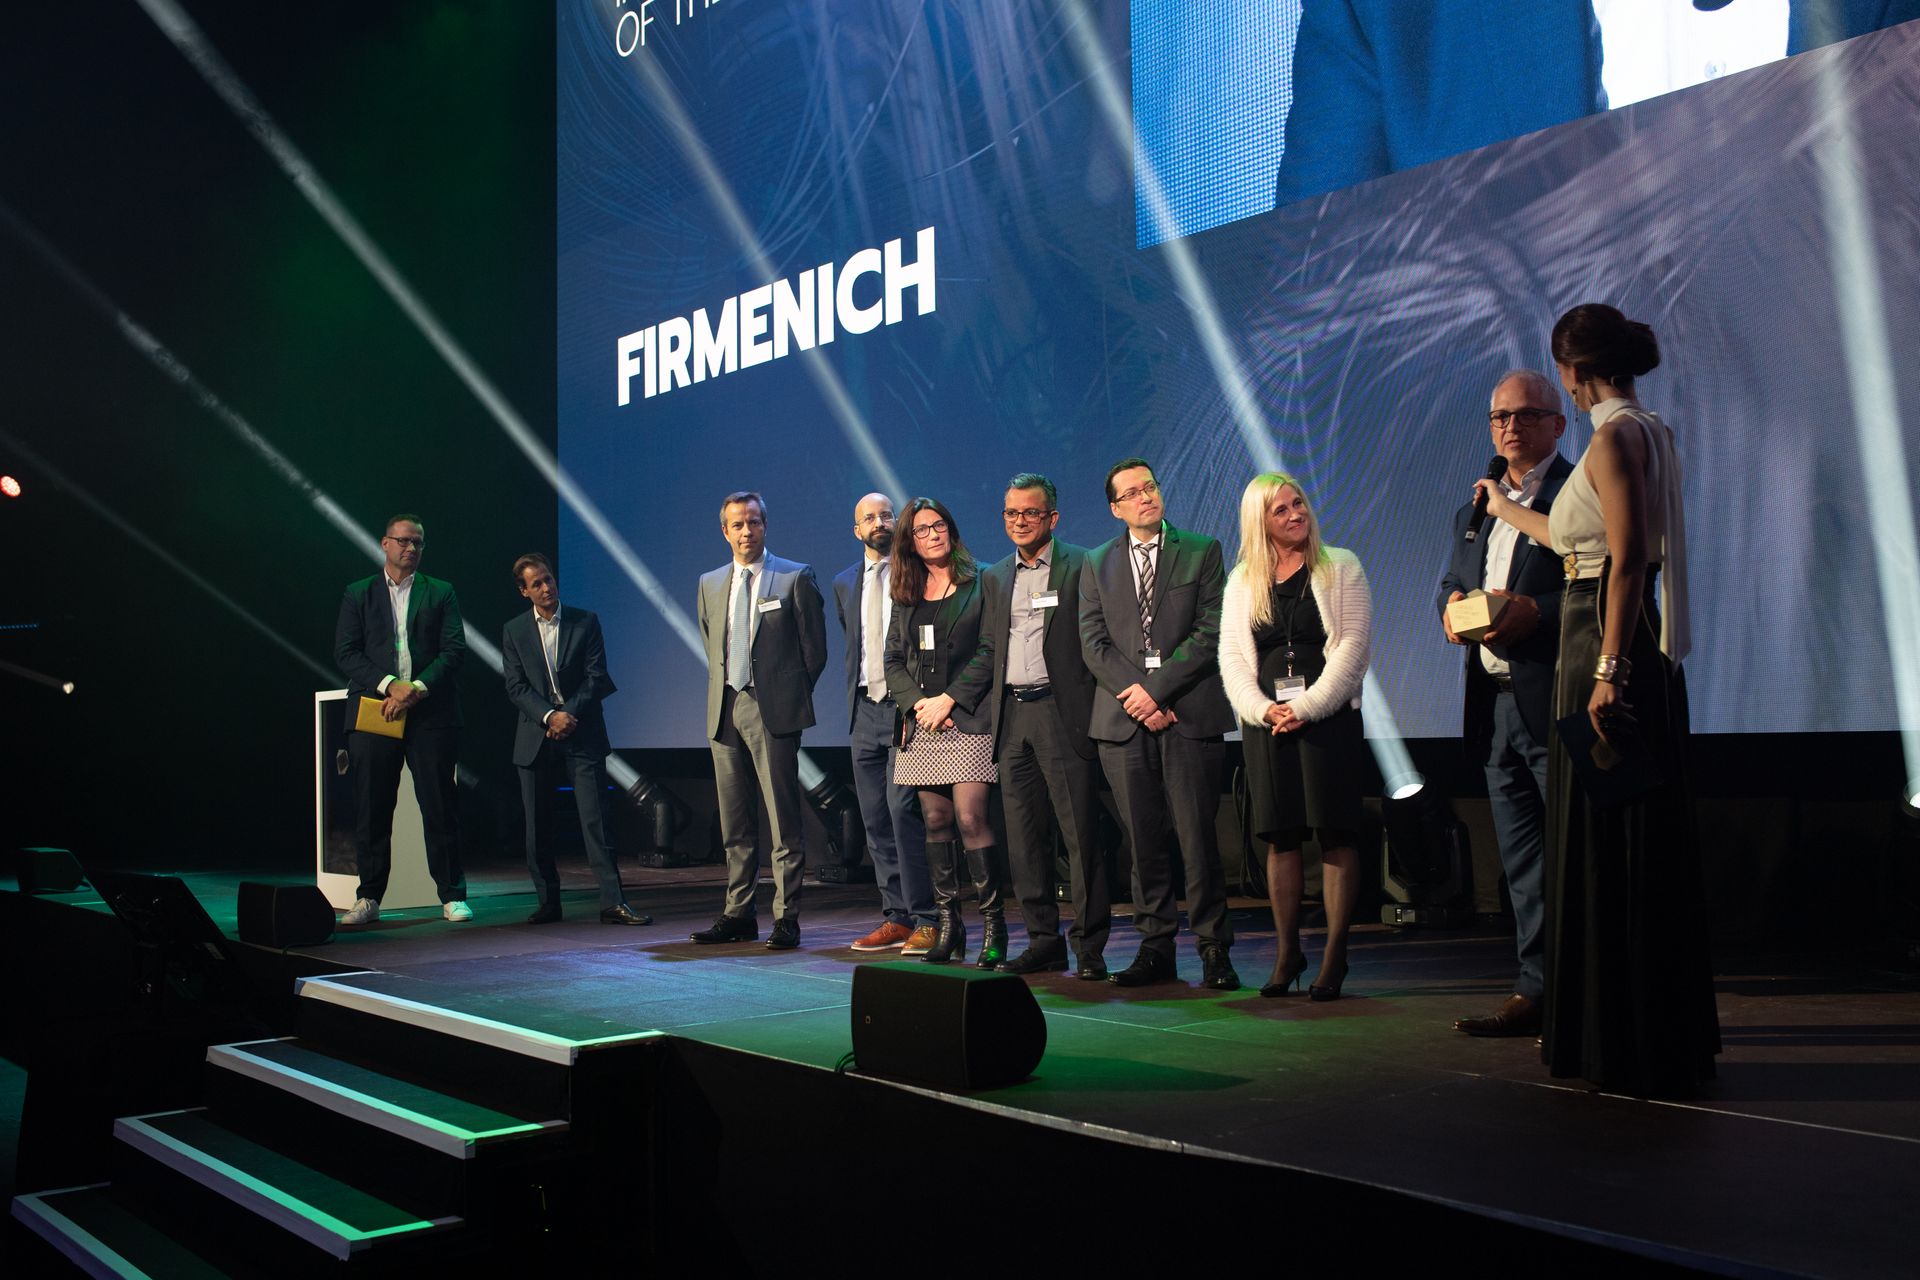 「Firmenich」という会社が、スイスの「デジタル エコノミー アワード」で「デジタル イノベーション オブ ザ イヤー」賞を受賞しました。